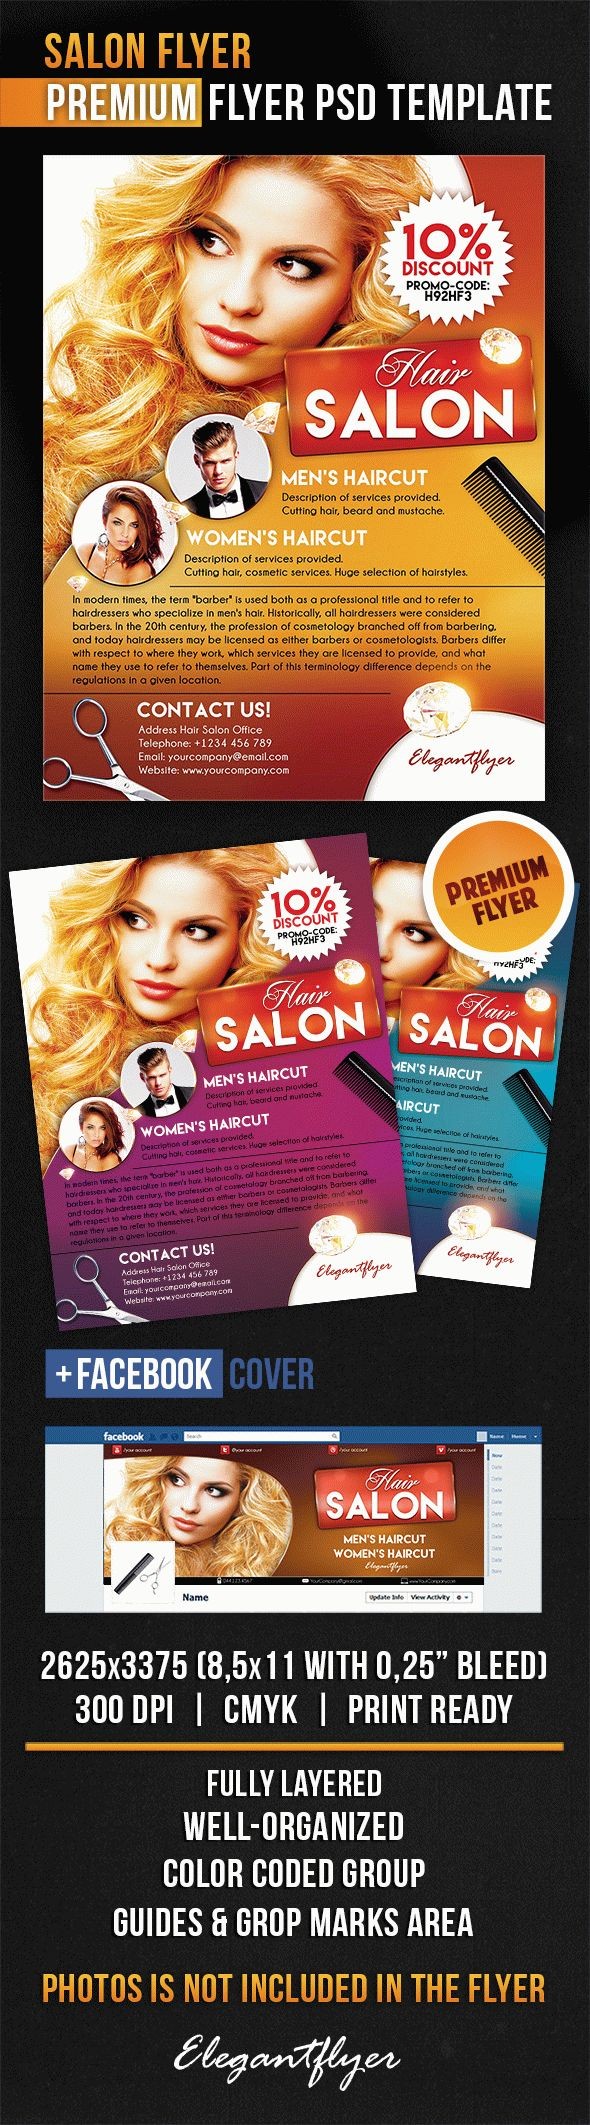 Salon Flyer by ElegantFlyer